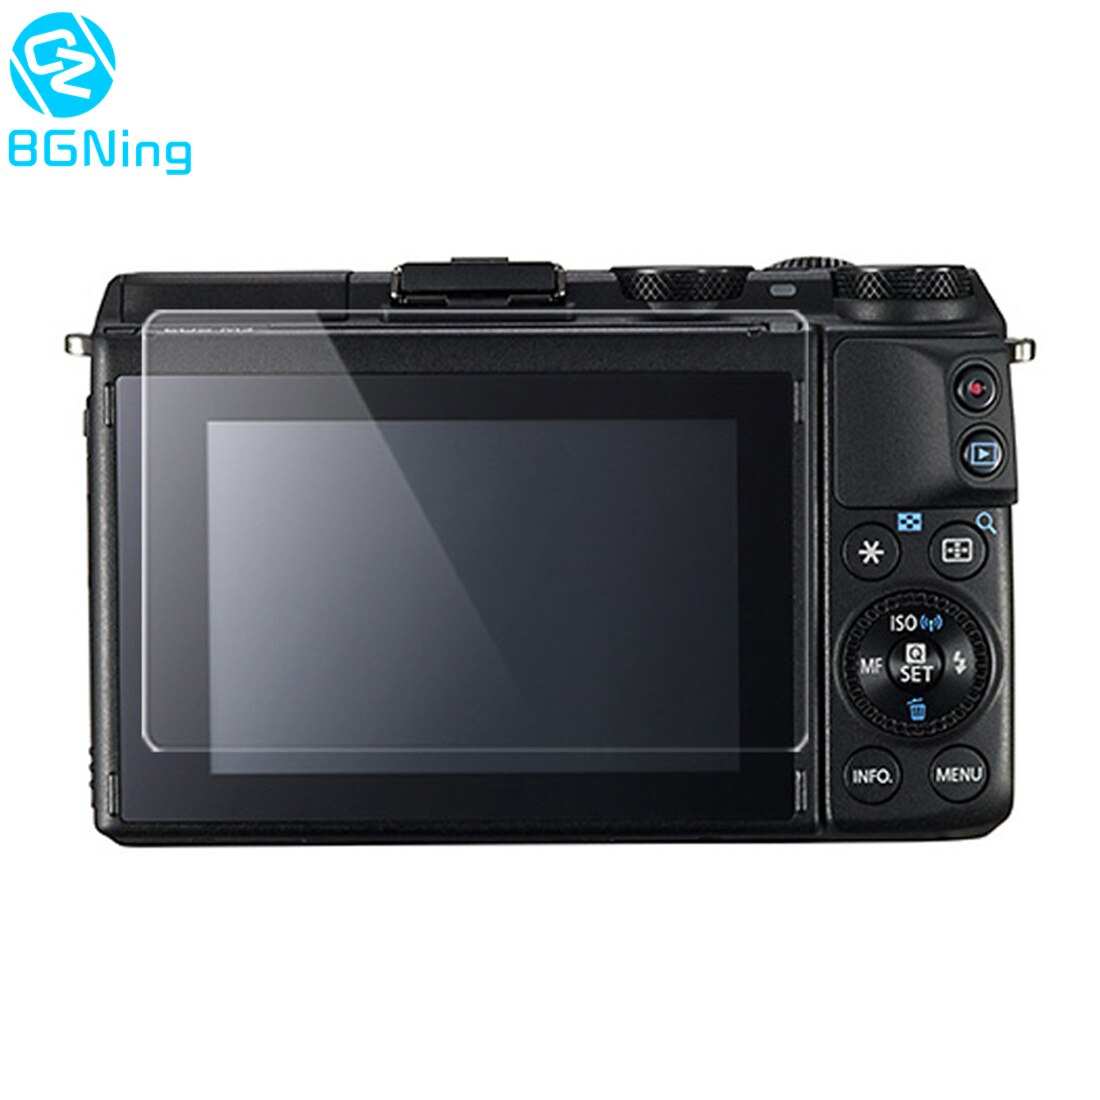 Bgning Gehard Glas Screen Protector Film Voor Canon Eos 550D 600D 700D 750D 760D 800D 80D 70D Dslr Camera Accessoires